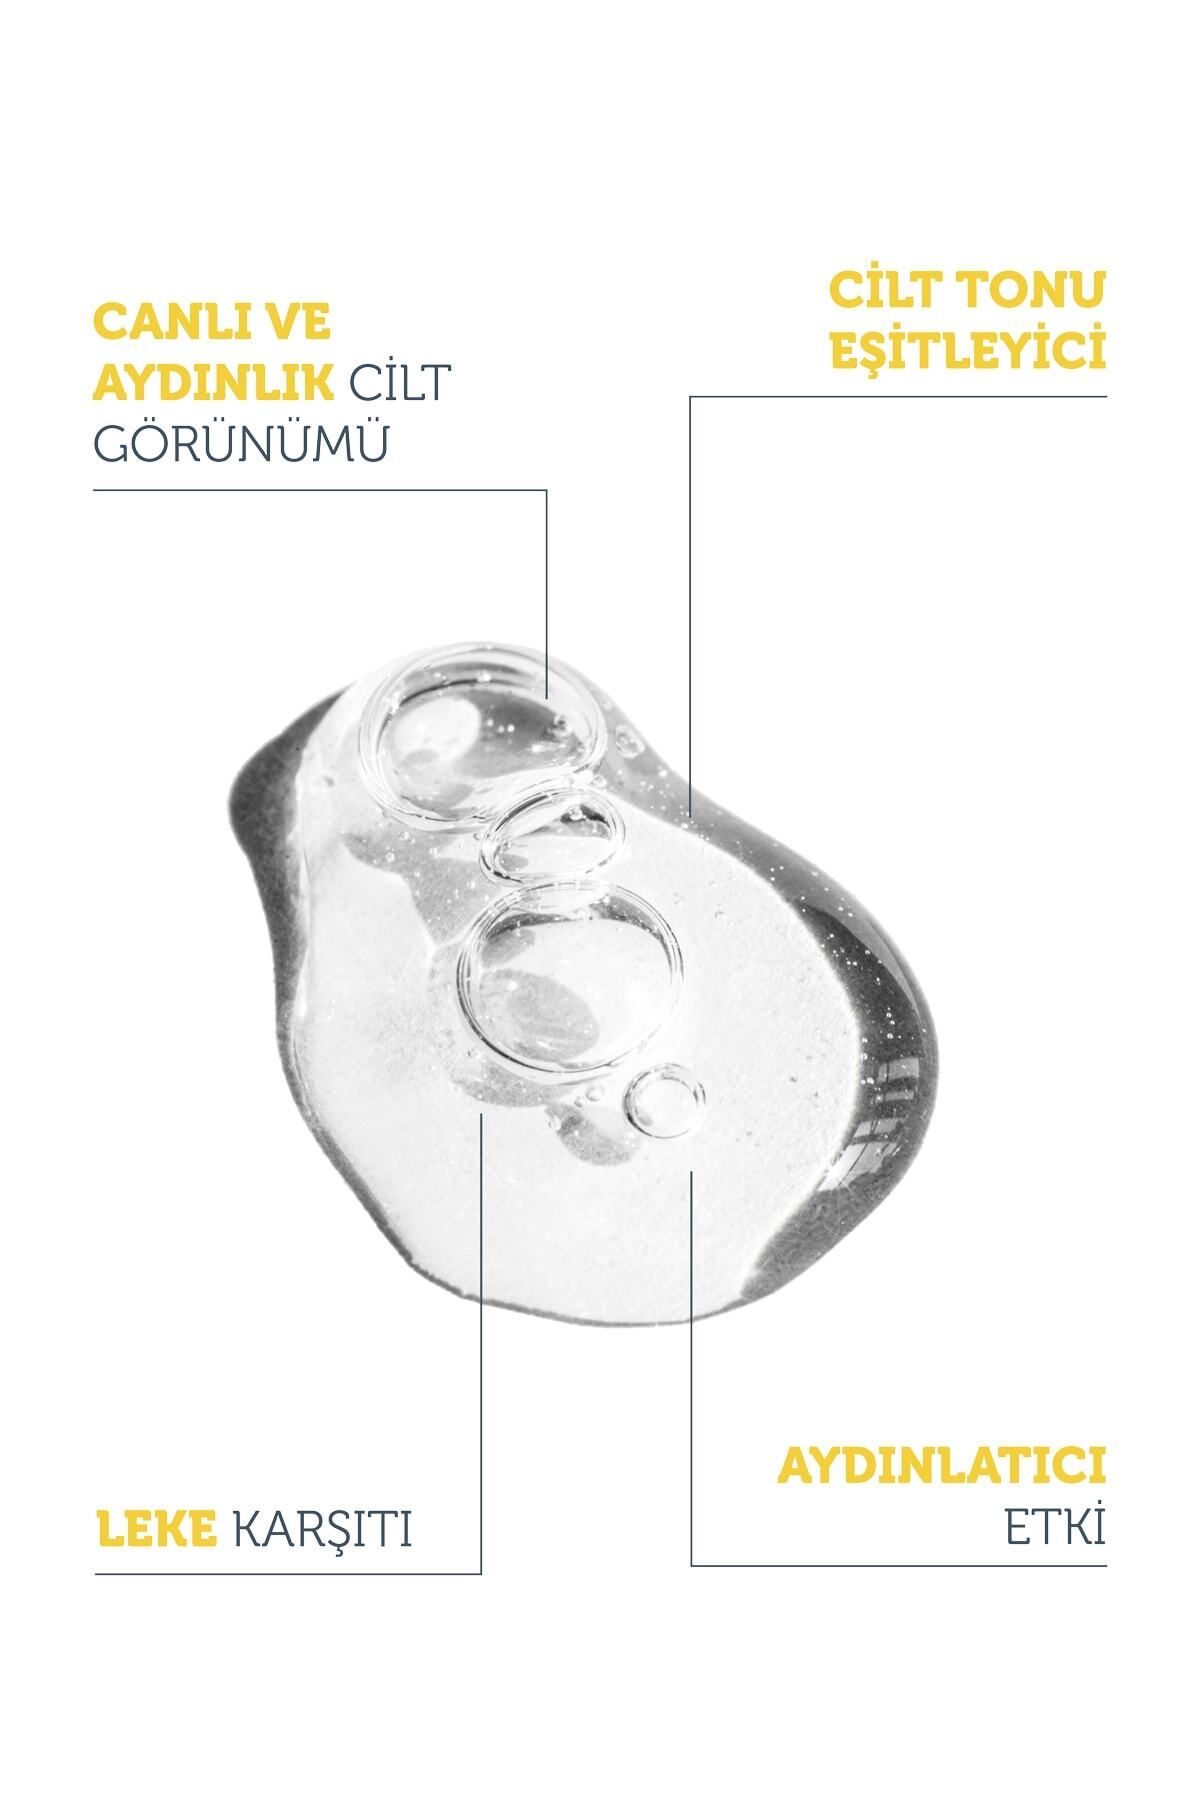 Leke Karşıtı Arbutin Cilt Bakım Serumu 30 Ml (arbutin %2 + Hyaluronic Acid)